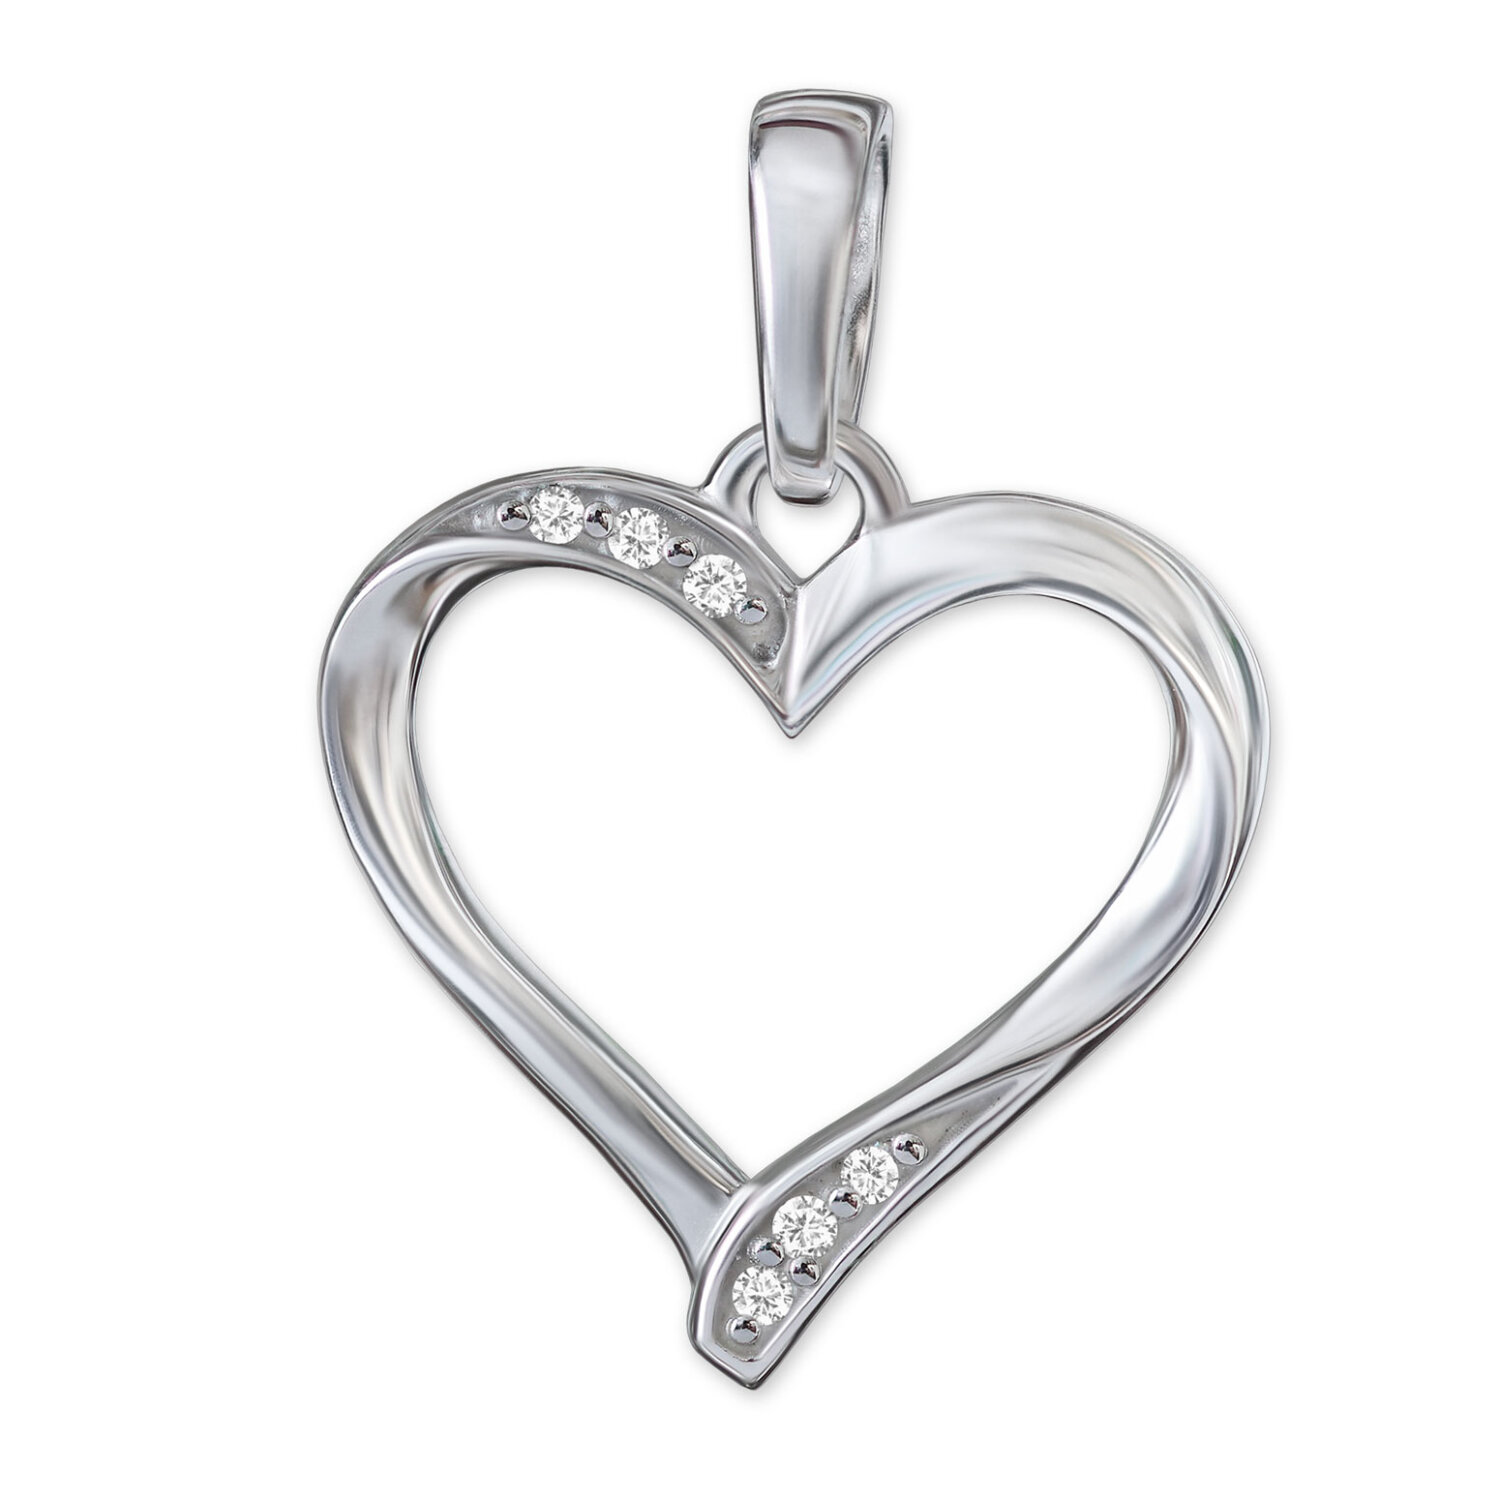 Silbernes Herz 13 mm offen geschwungen Form mit Zirkonias Echt Silber 925